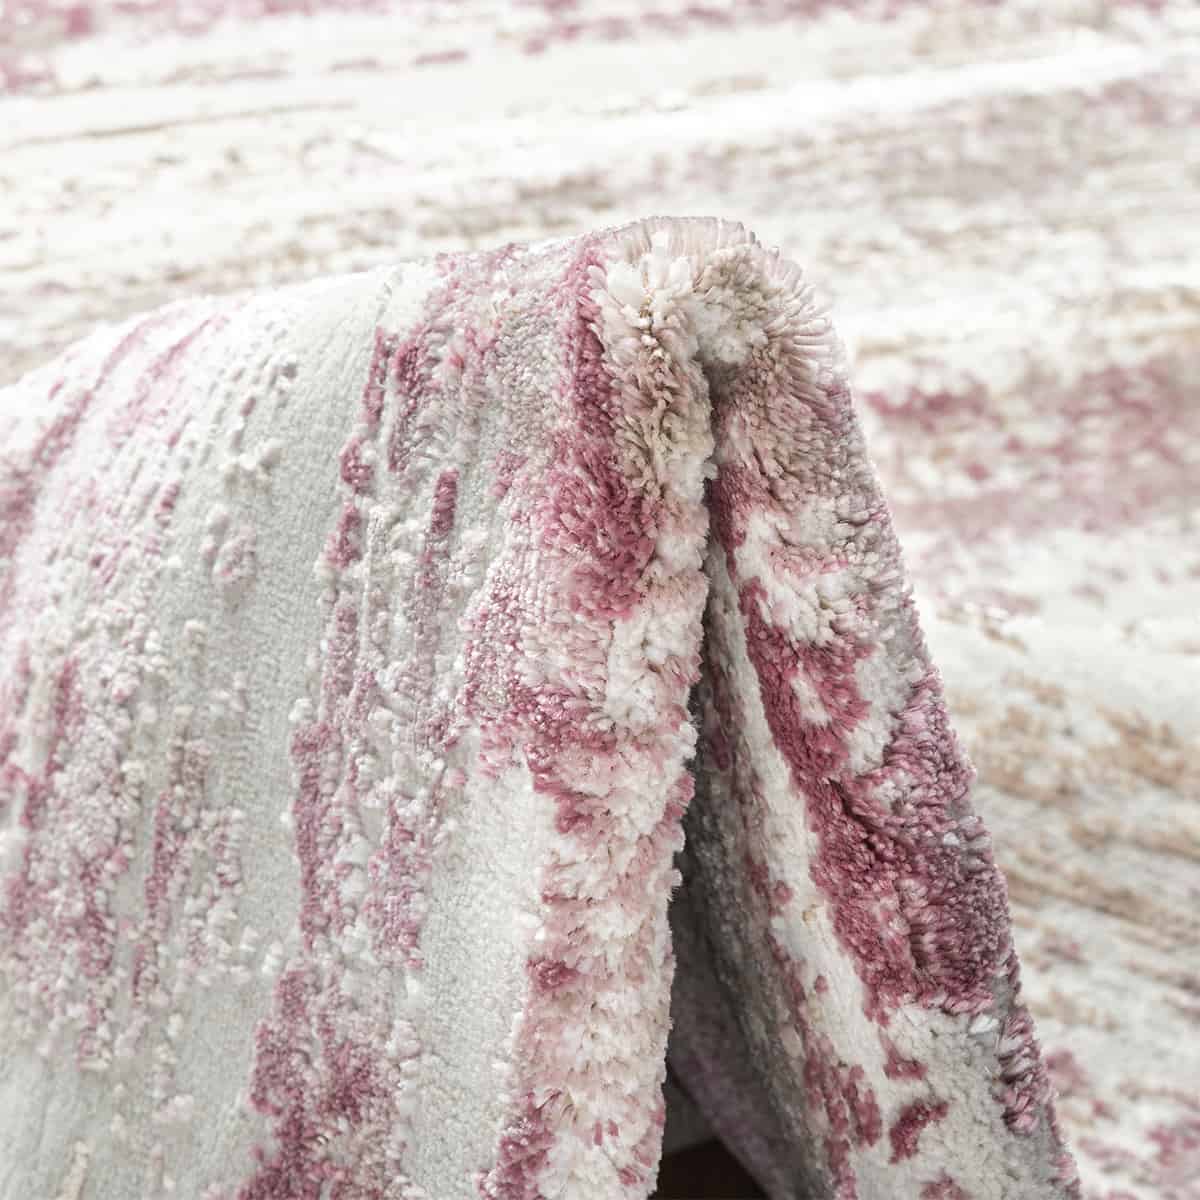  שטיח מדריד 14 אפור/ורוד | השטיח האדום 